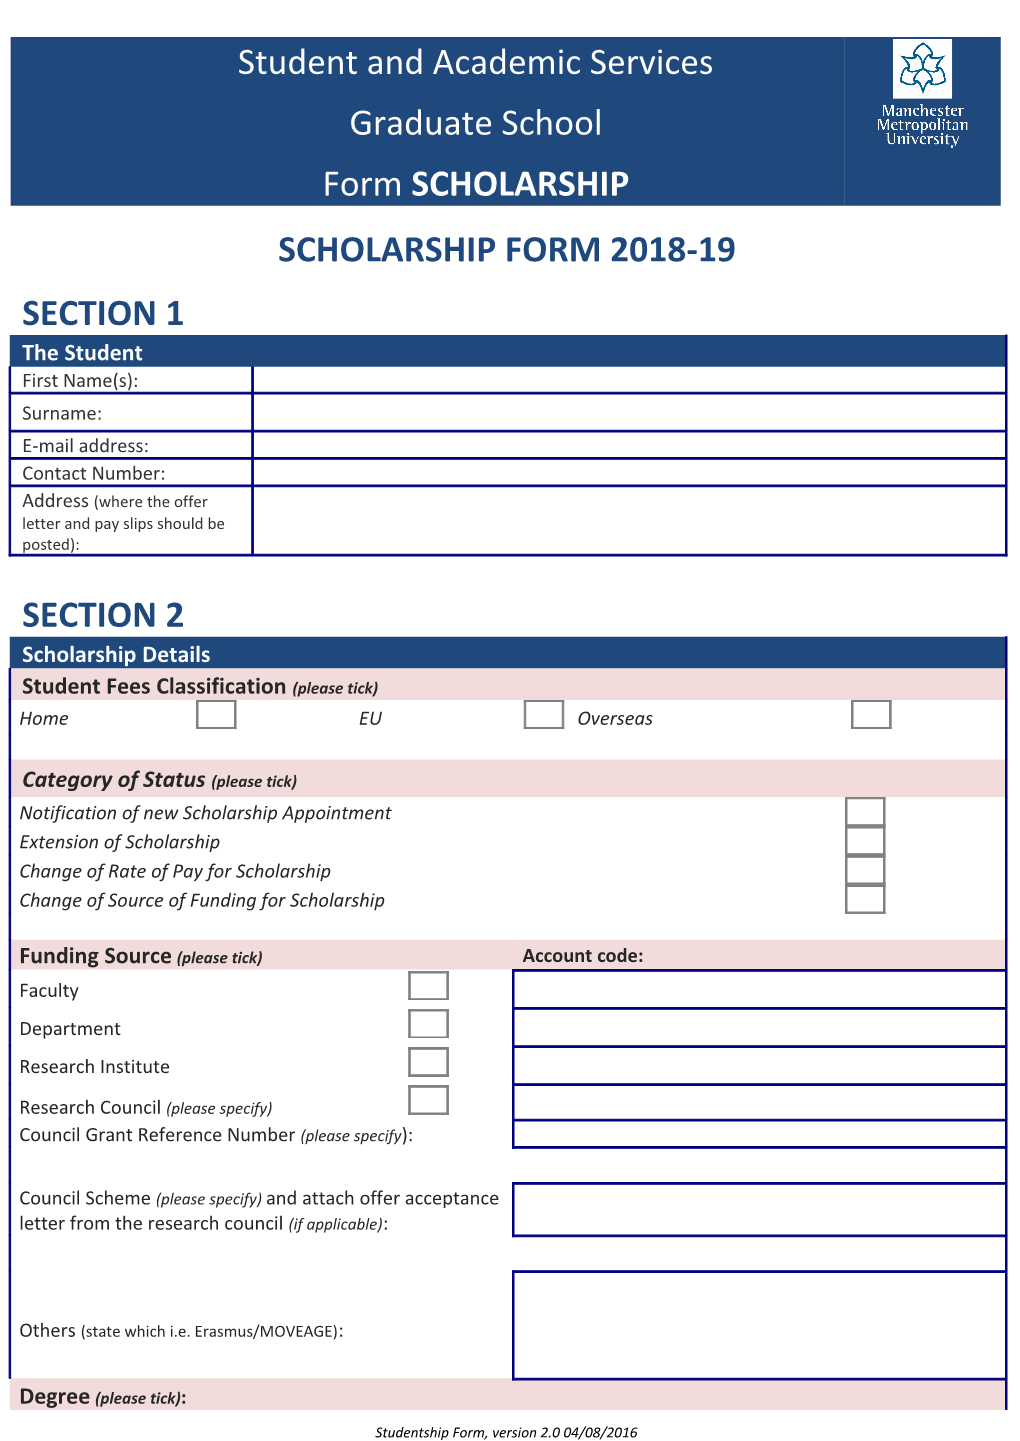 Studentship Form, Version 2.0 04/08/2016